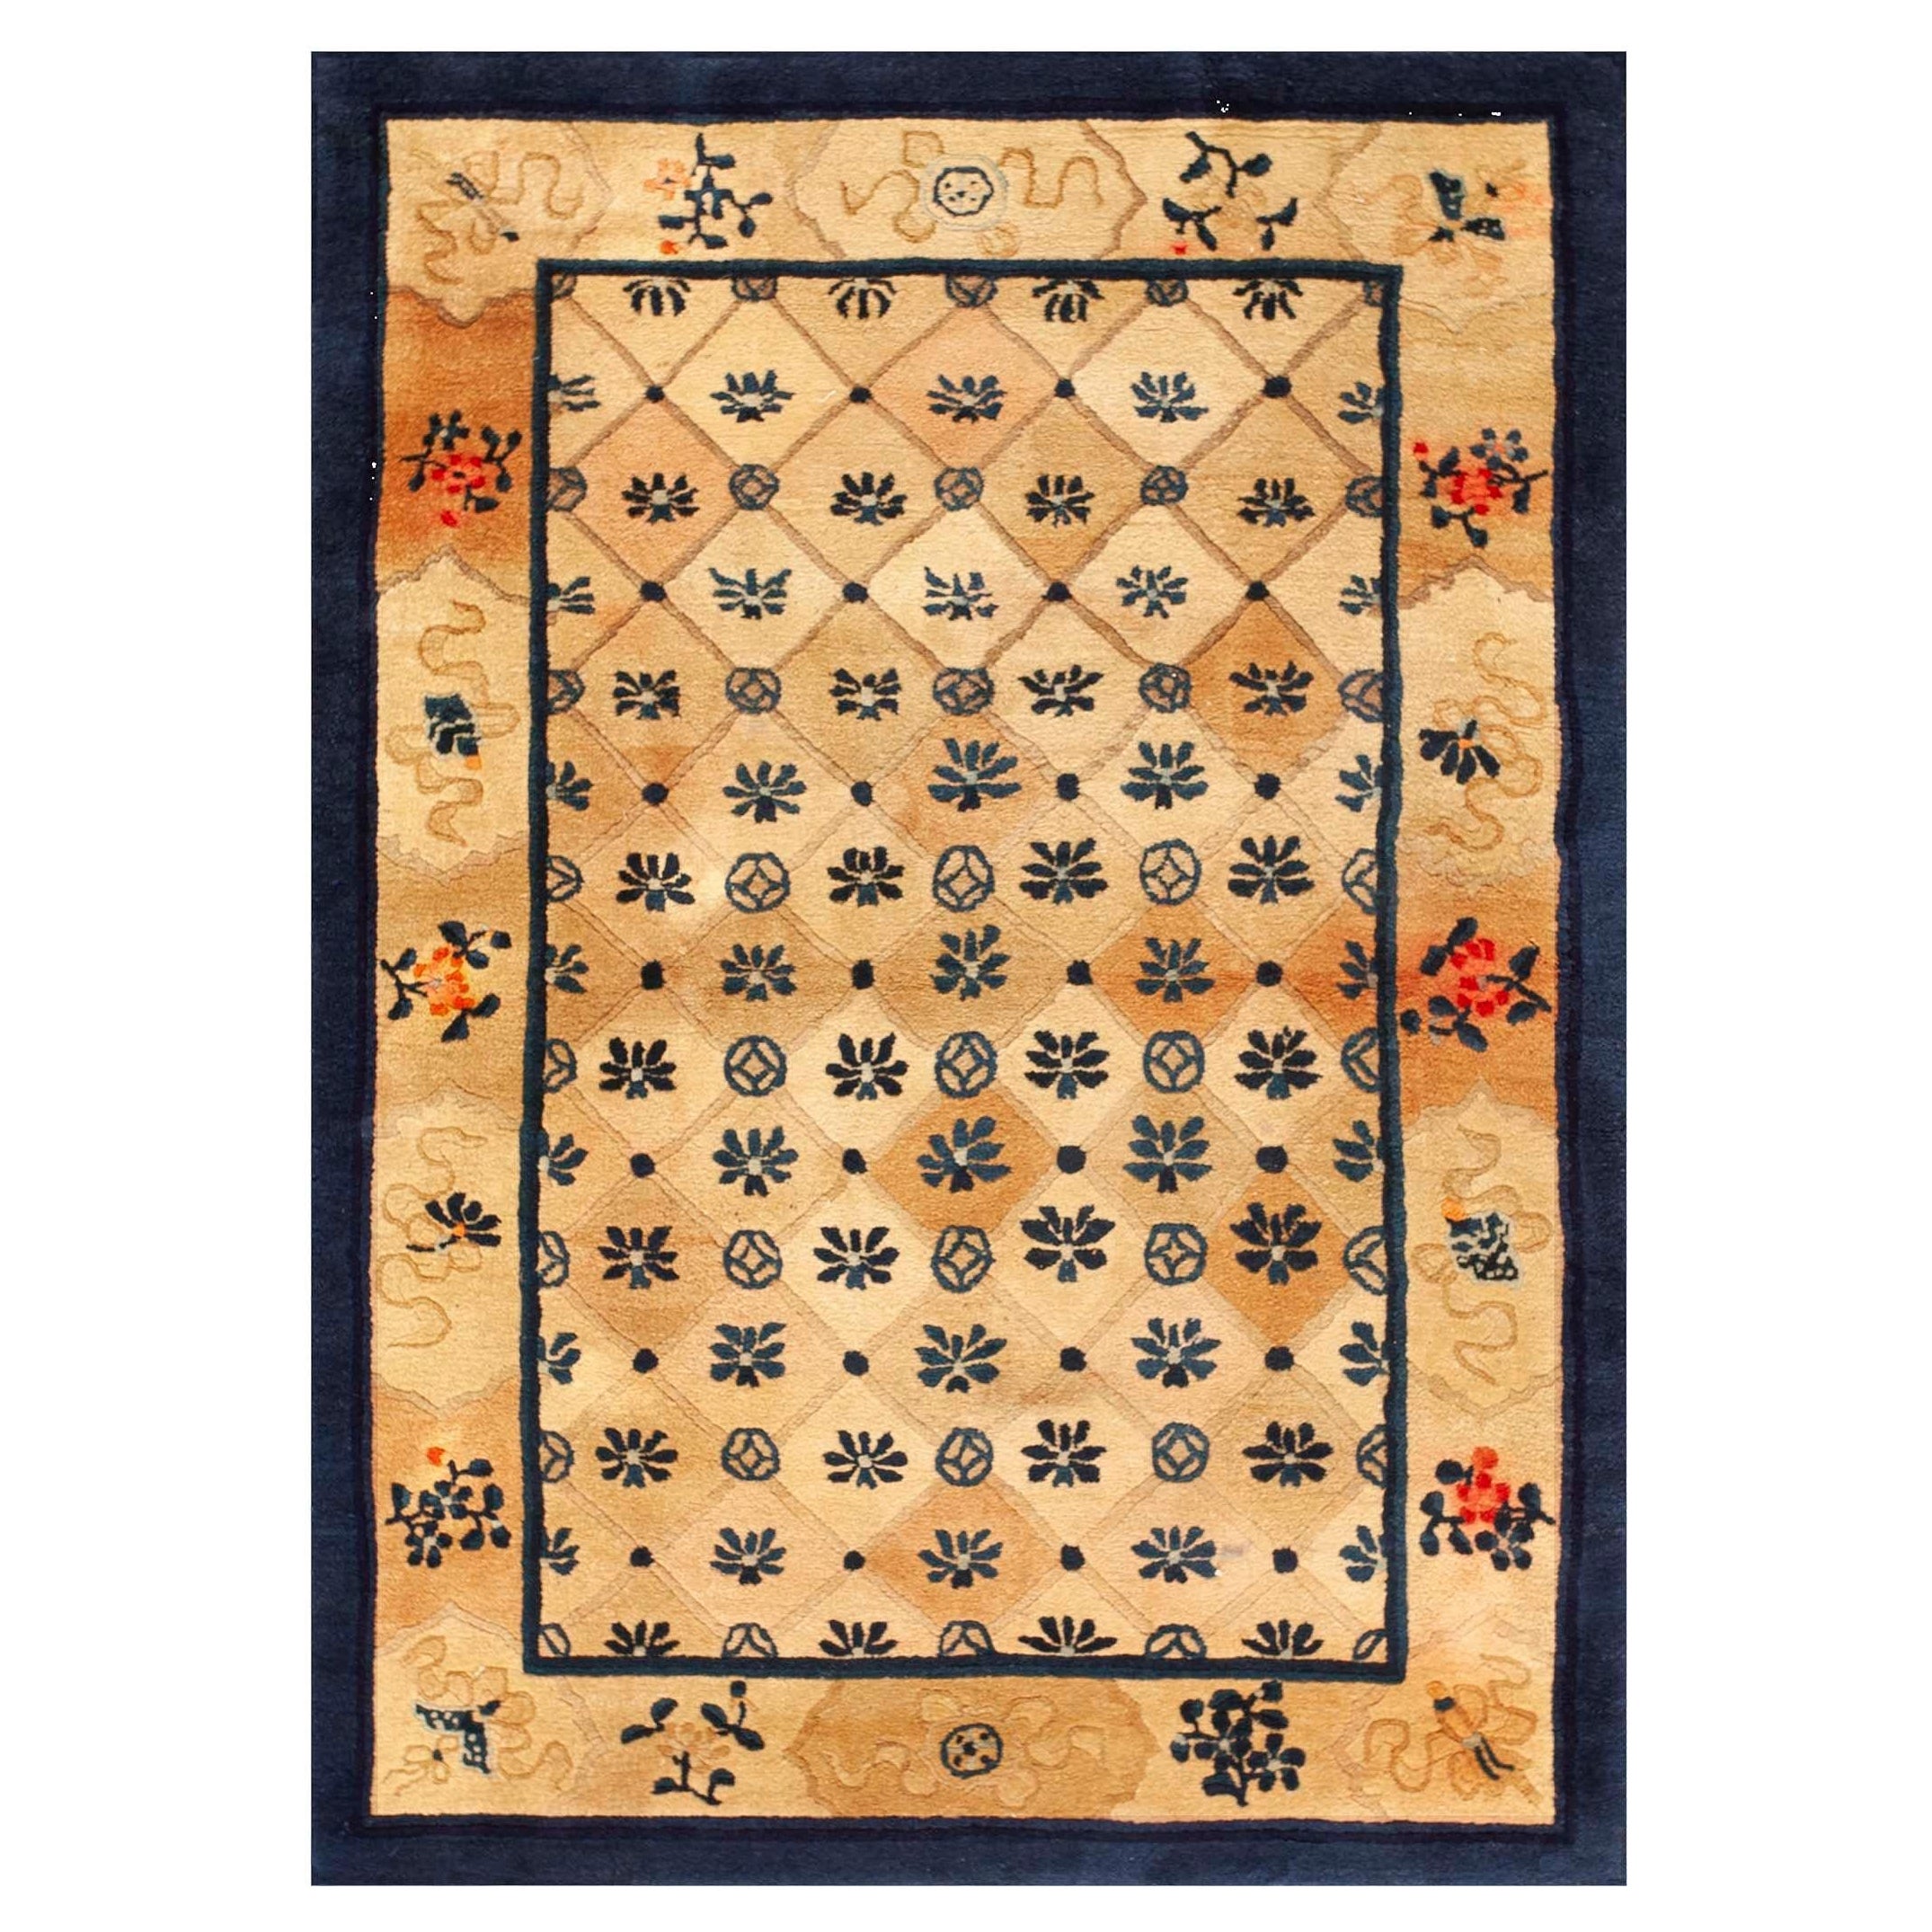 Chinesischer Pekinger Teppich des frühen 20. Jahrhunderts ( 4'3" x 6' - 130 x 183) 